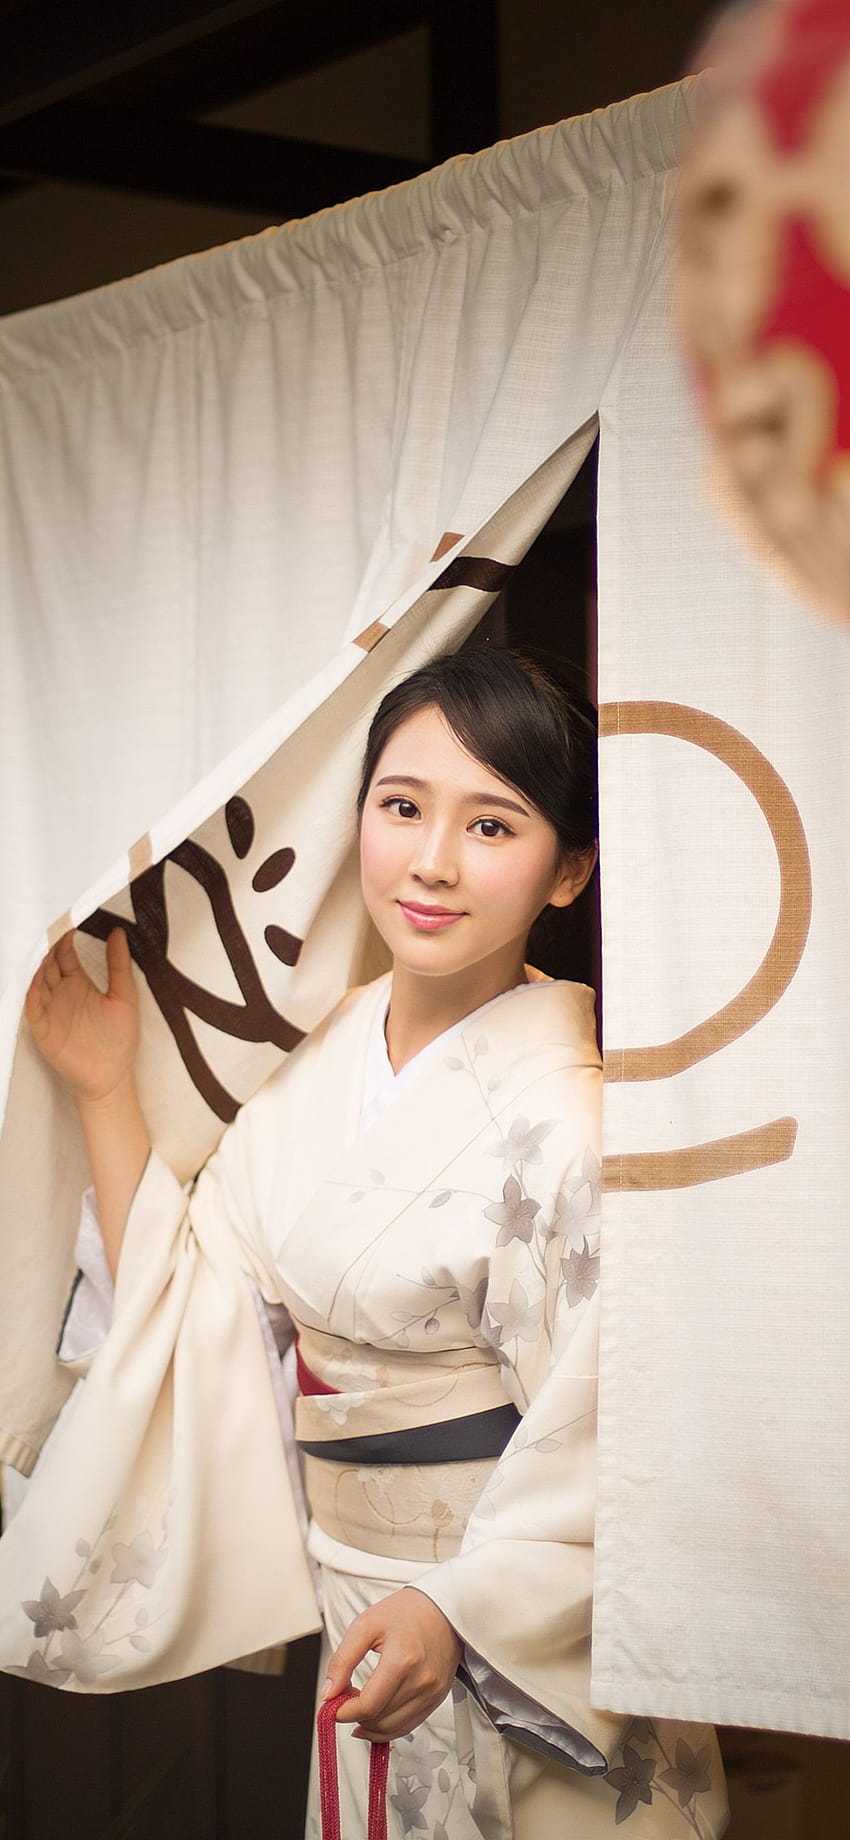 Bella ragazza giapponese, kimono, sorriso, lanterna 1242x2688 iPhone, bellezza ragazza giapponese iphone Sfondo del telefono HD